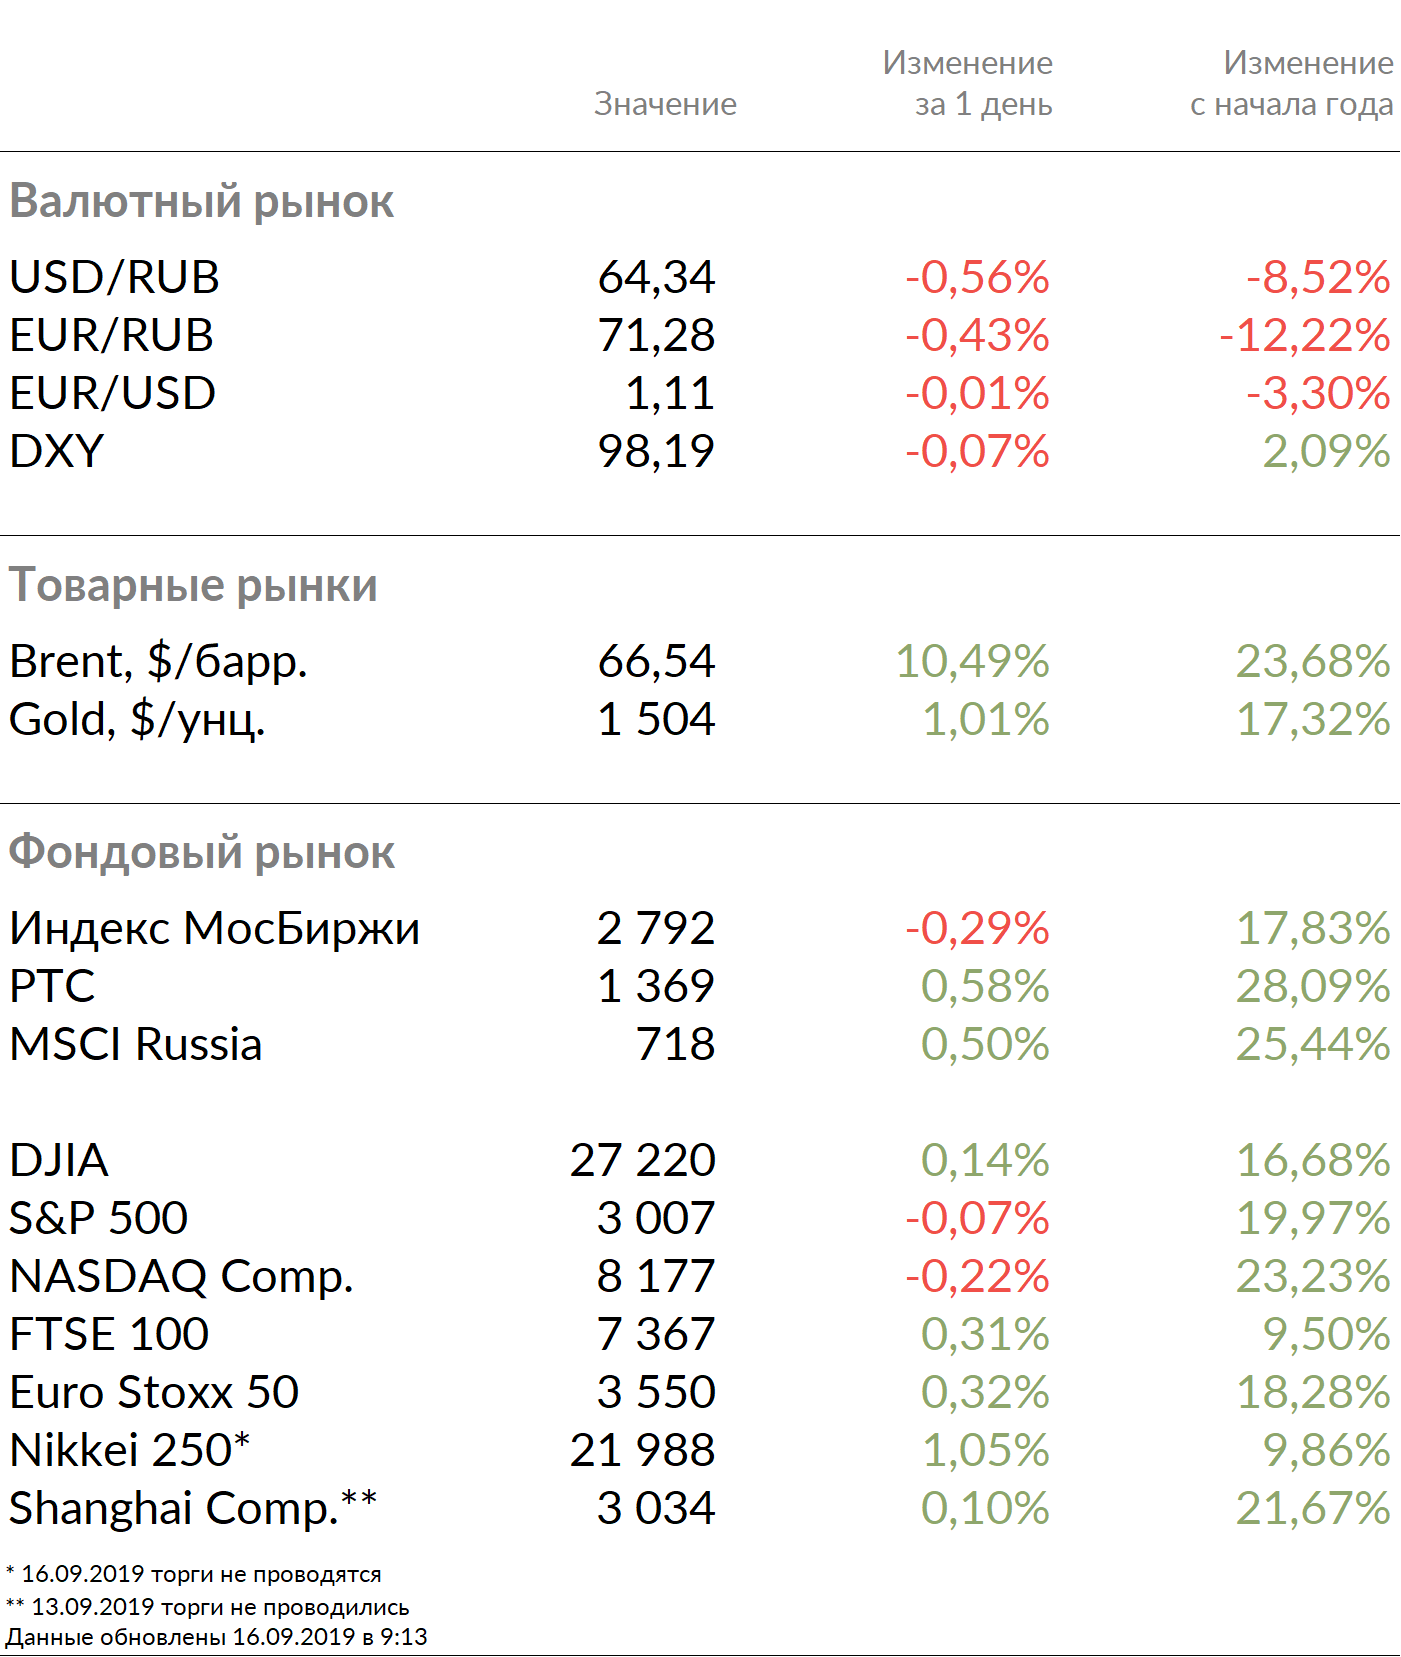 Рыночные индикаторы на 16 сентября